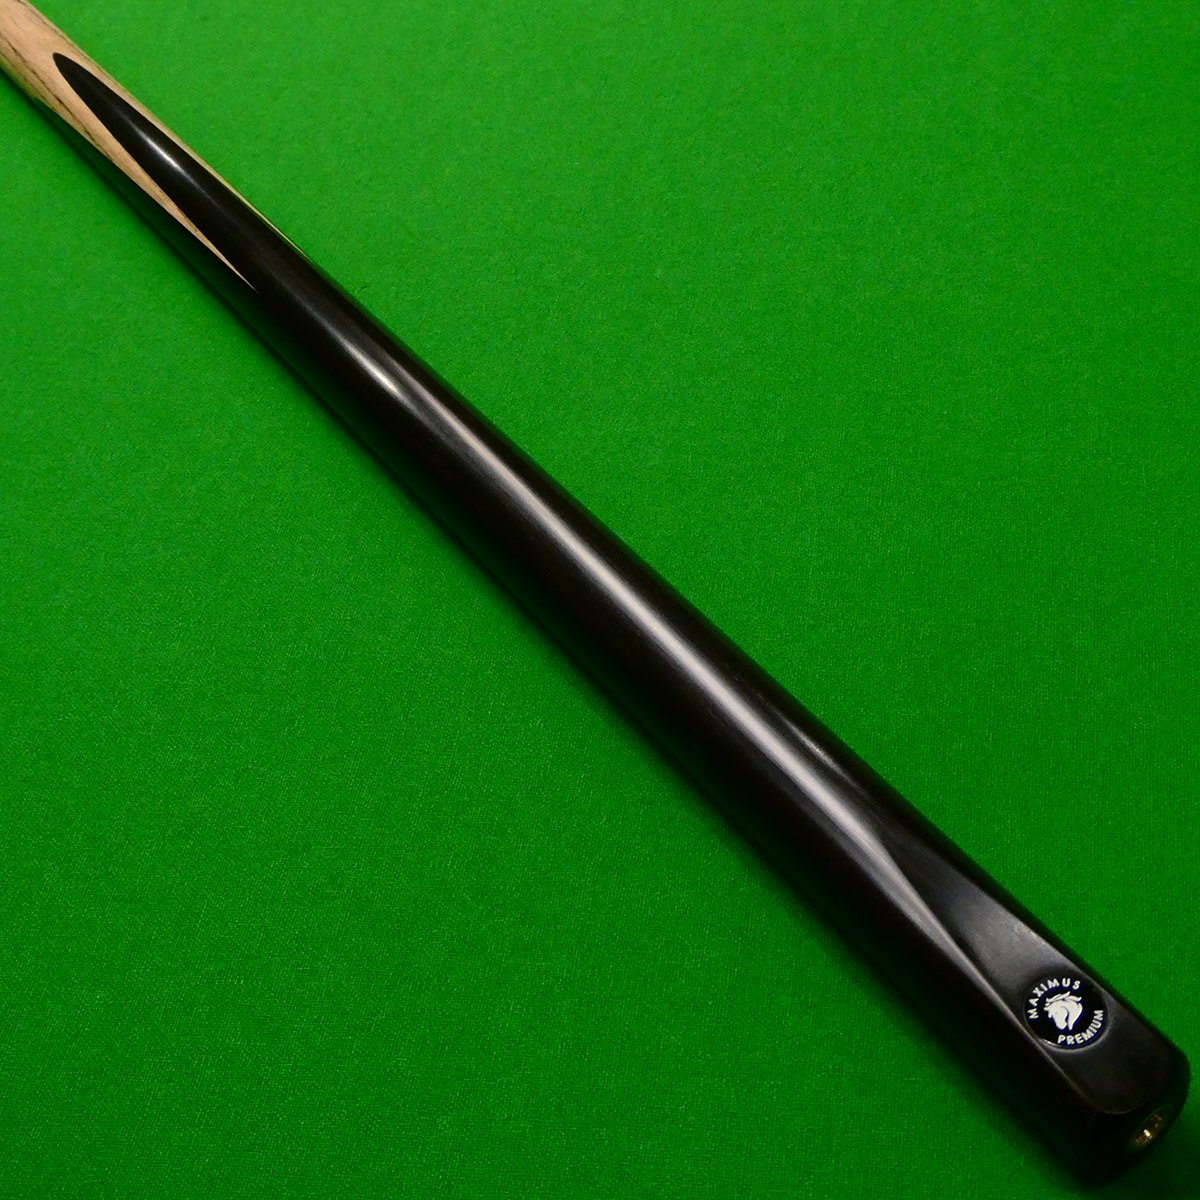 1pc Maximus Premium Snooker cue - Premium Ash shaft (Q)